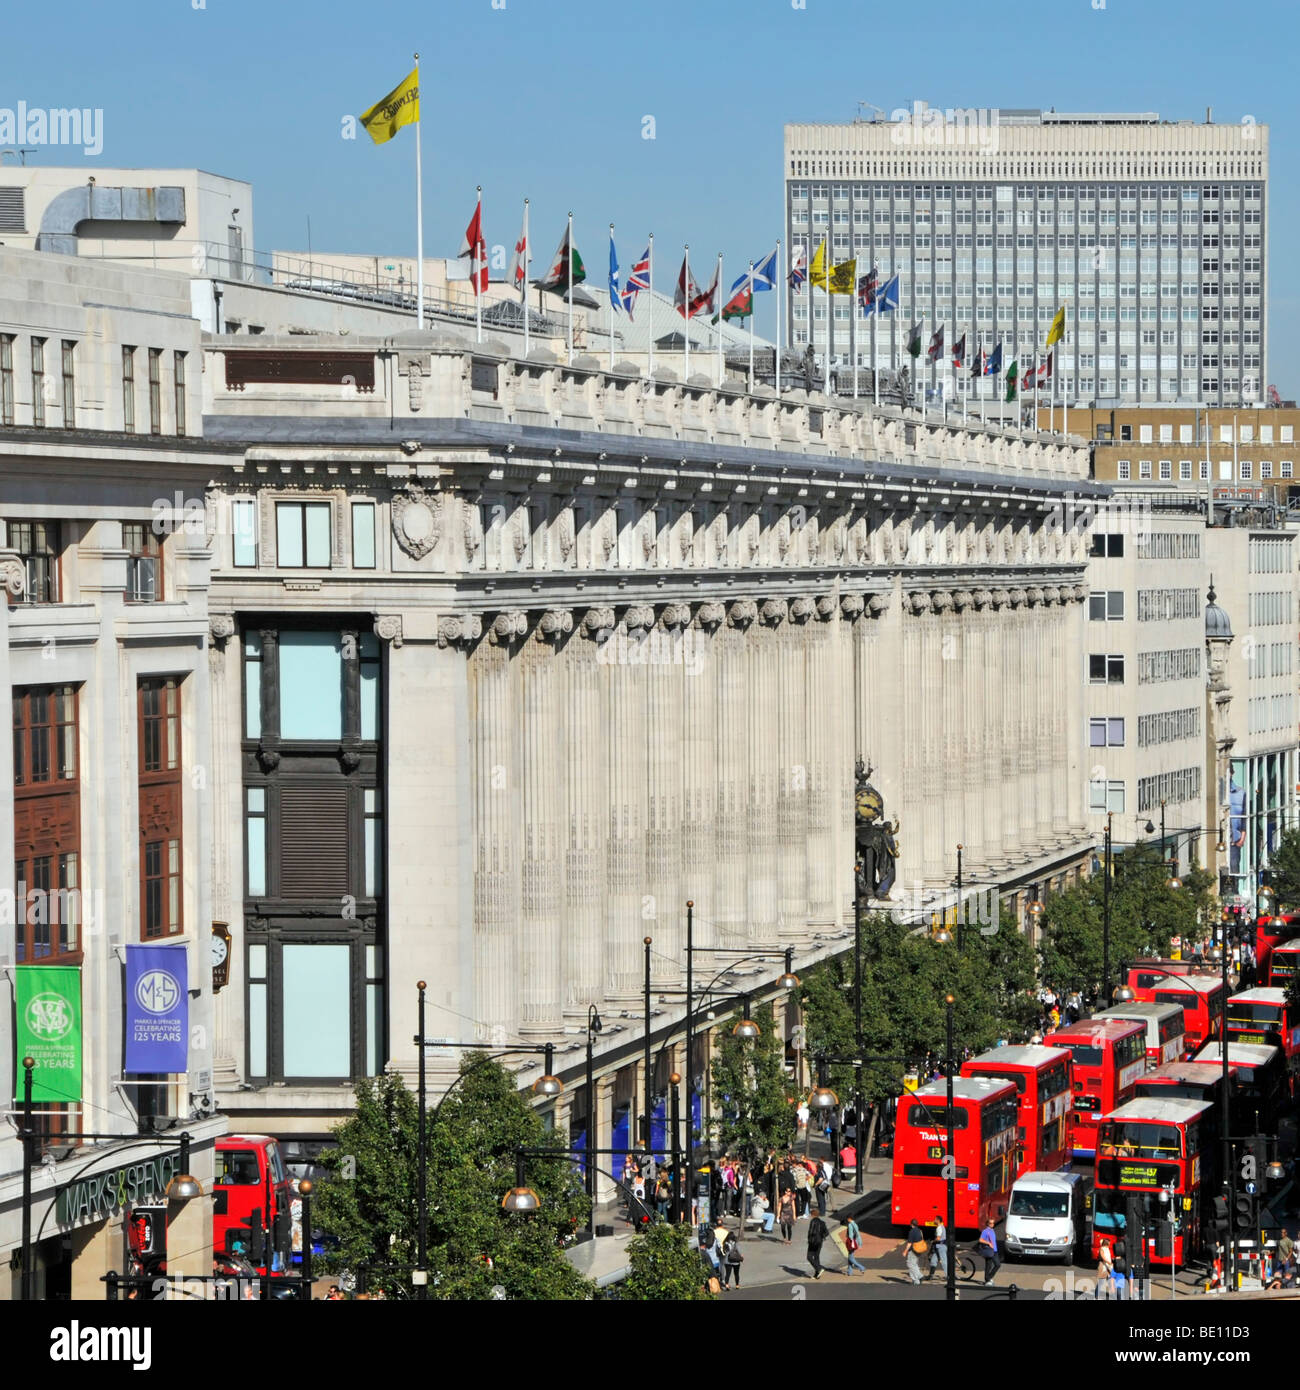 Oxford Street façade de grand magasin Selfridges drapeaux au vent au niveau du toit & red bus London England UK London West End Banque D'Images